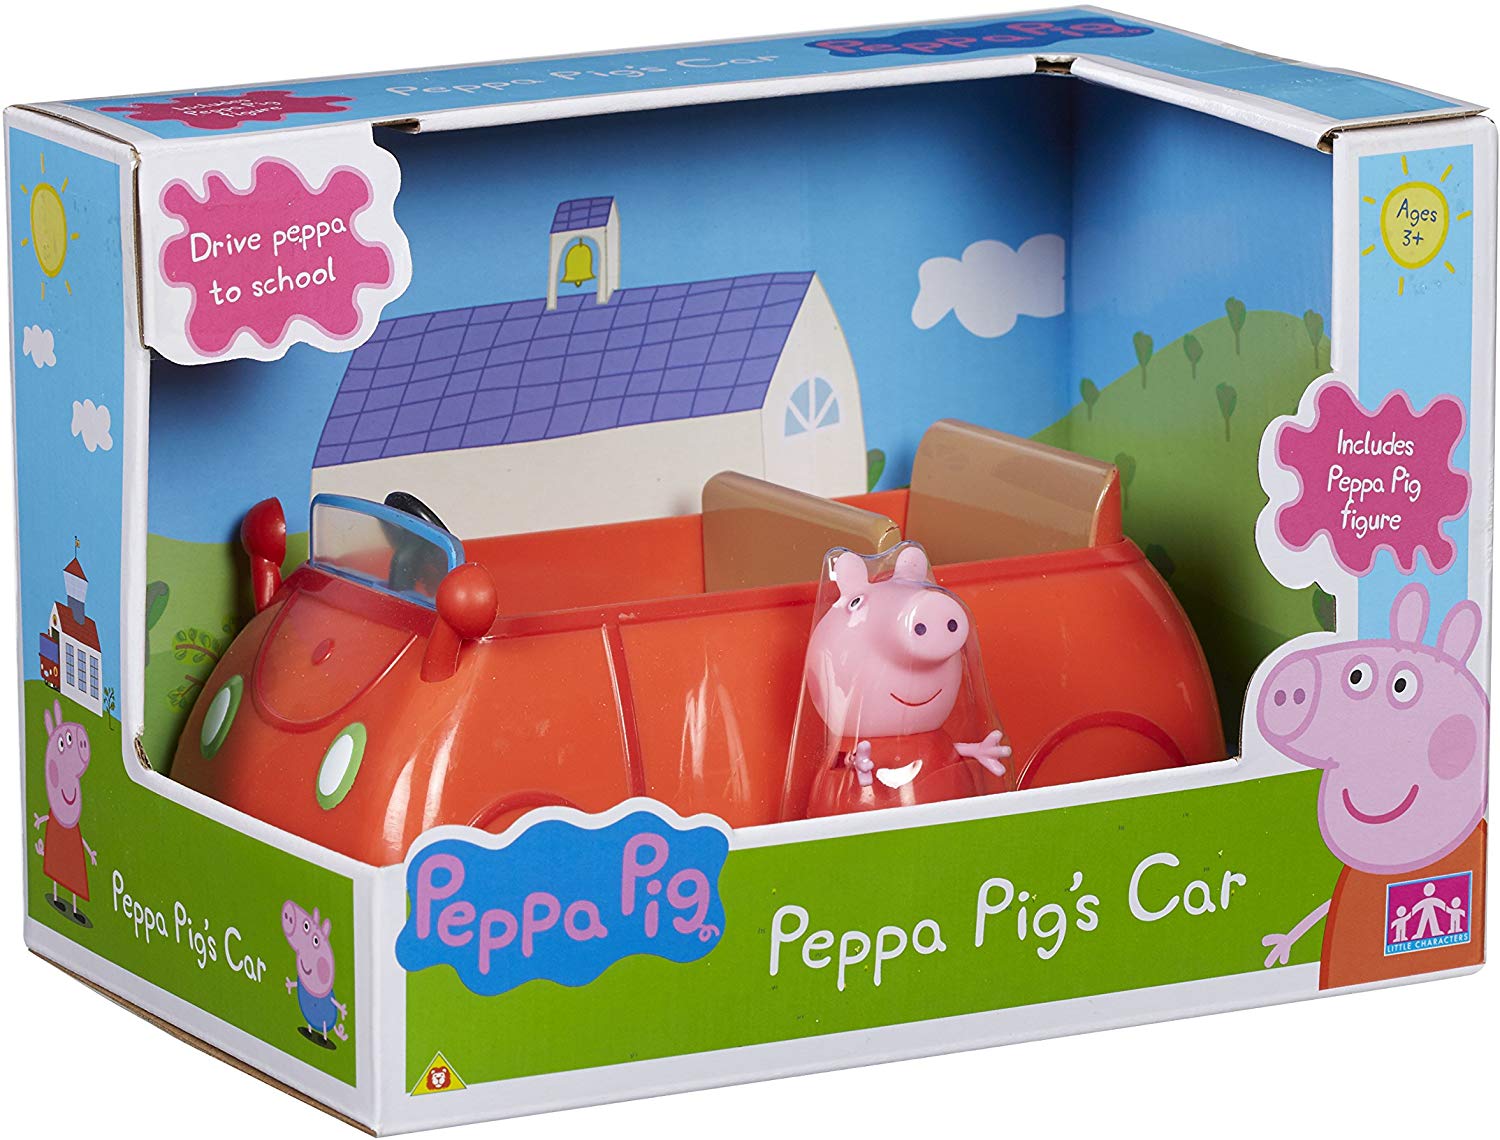 Giochi Preziosi Peppa Pig - La grande casa a € 39,99